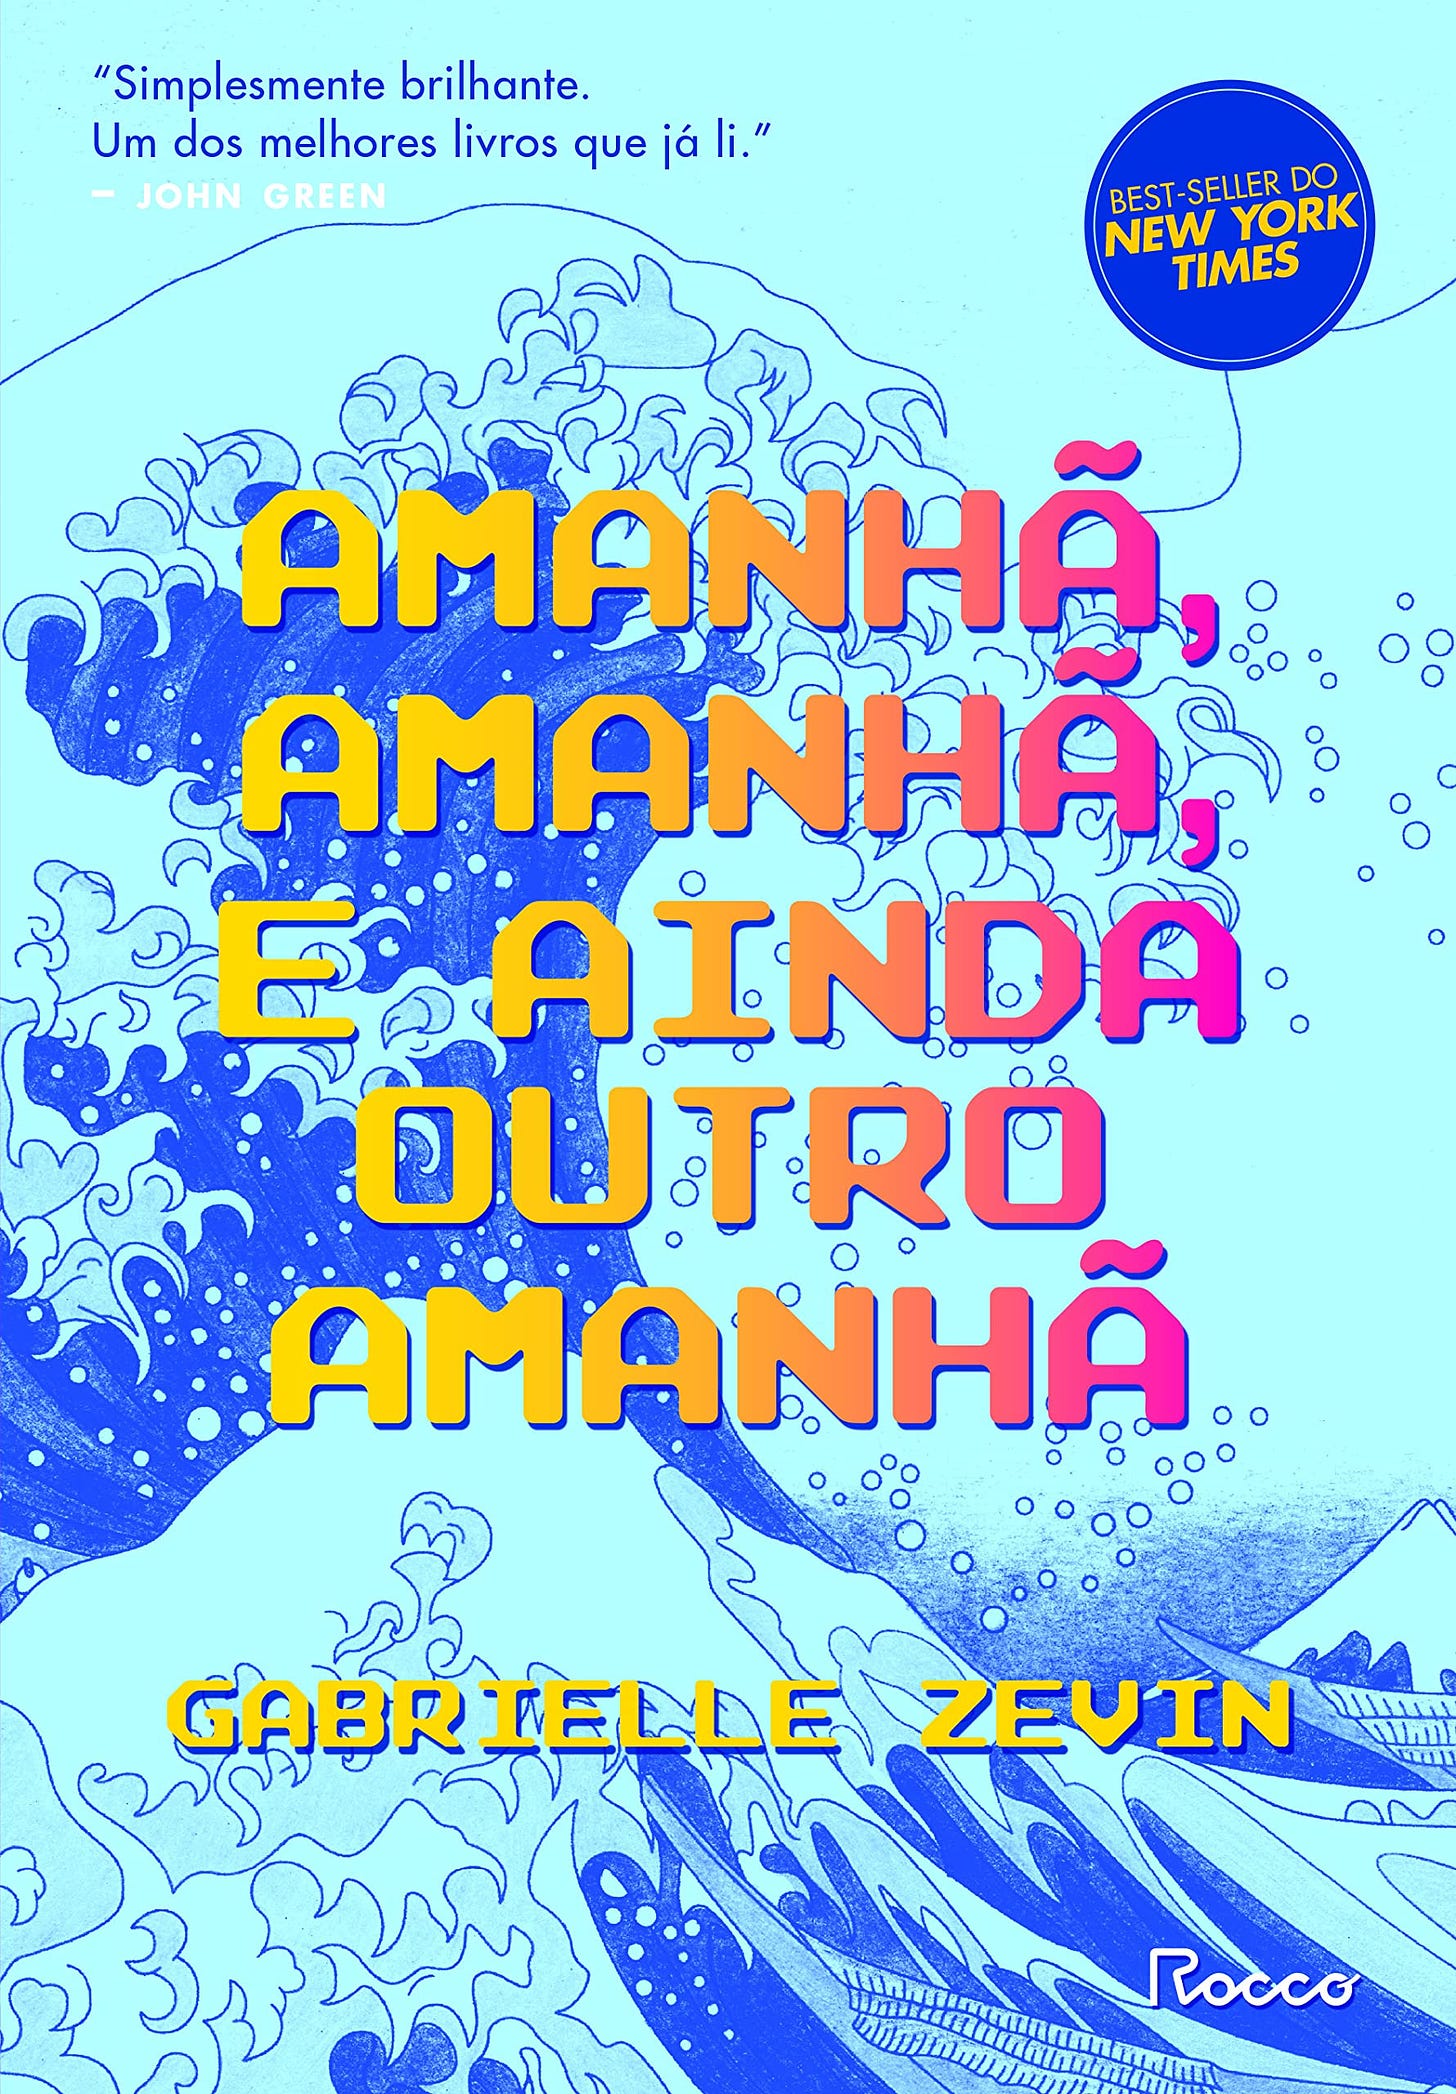 Capa do livro - edição brasileira - de “Amanhã, amanhã, e ainda outra amanhã”. Descrição da imagem: somente lettering amarelo preenchendo a capa azul.